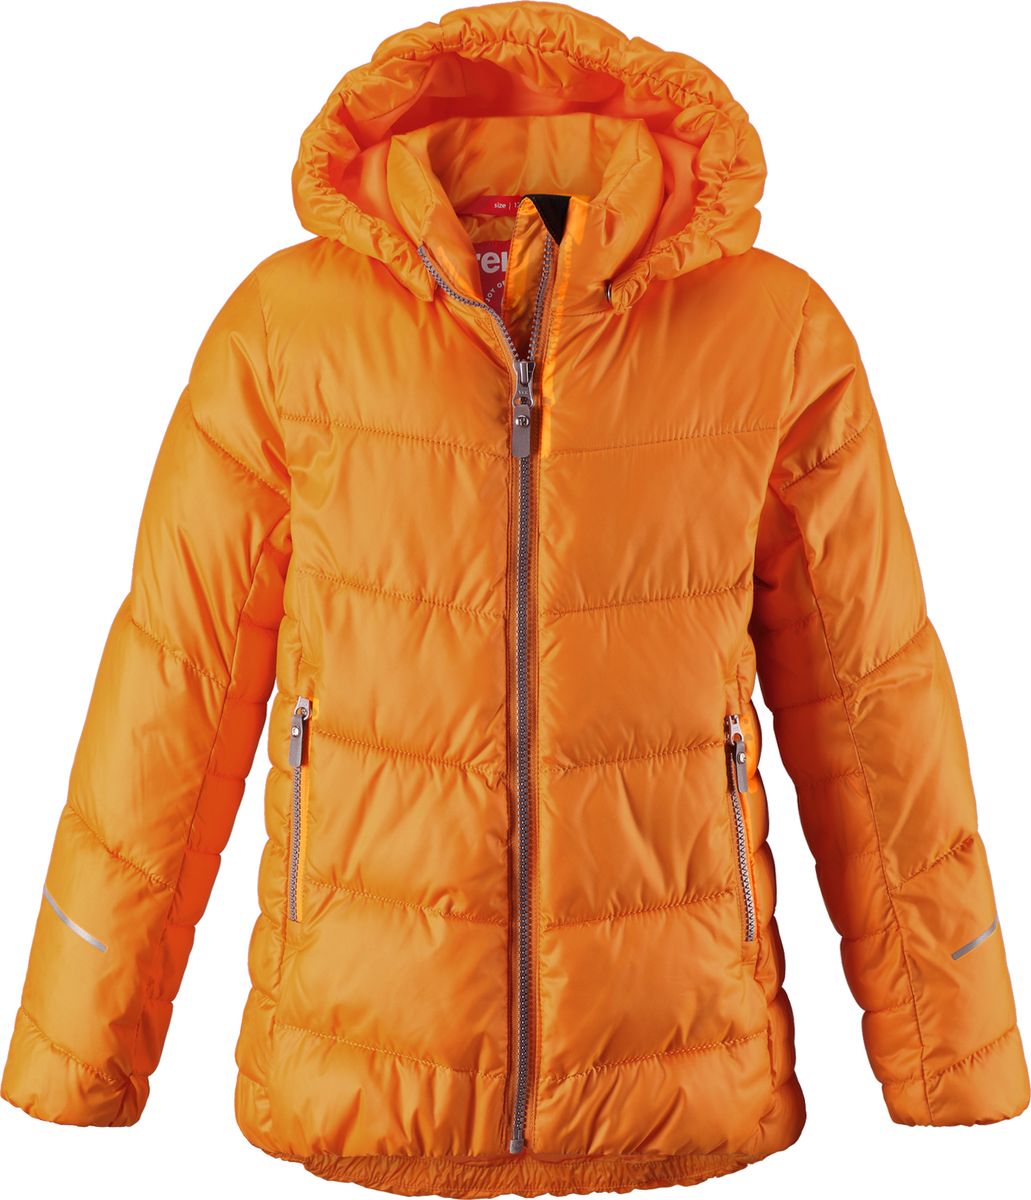 Куртка для девочки Reima Malla, цвет: оранжевый. 5313442440. Размер 122